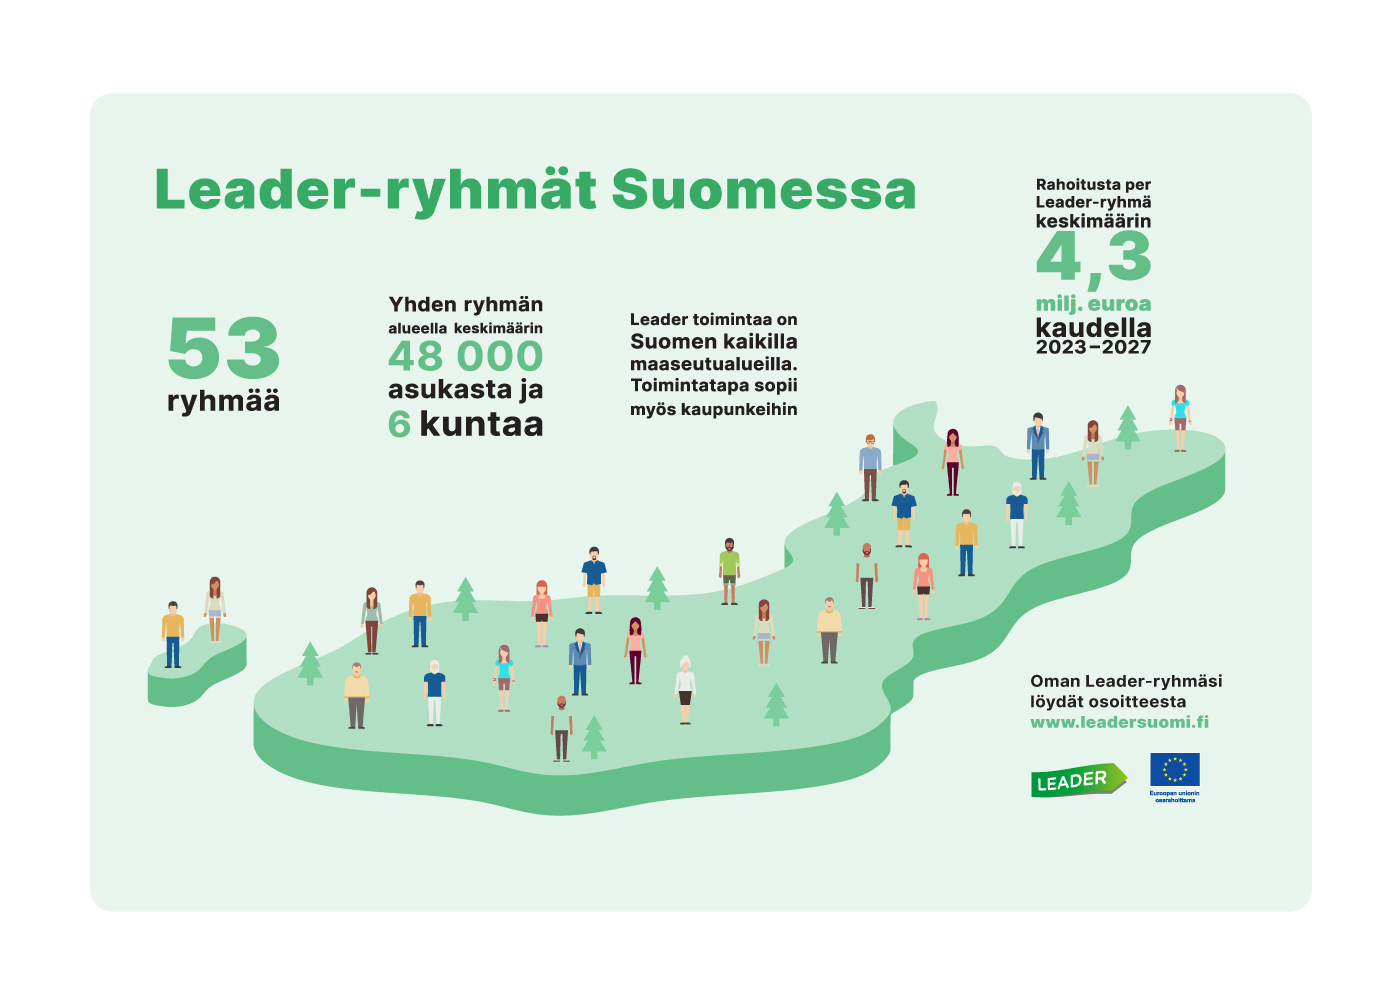 Leader-ryhmät Suomessa. 53 ryhmää, yhden ryhmän alueella keskimäärin 48 000 asukasta ja 6 kuntaa. Leader-toimintaa on Suomen kaikilla maaseutualueilla. Toimintatapa sopii myös kaupunkeihin. Rahoitusta per Leader-ryhmä keskimäärin 4,3 miljoonaa euroa kaudella 2023-2027. Piirroskuva.